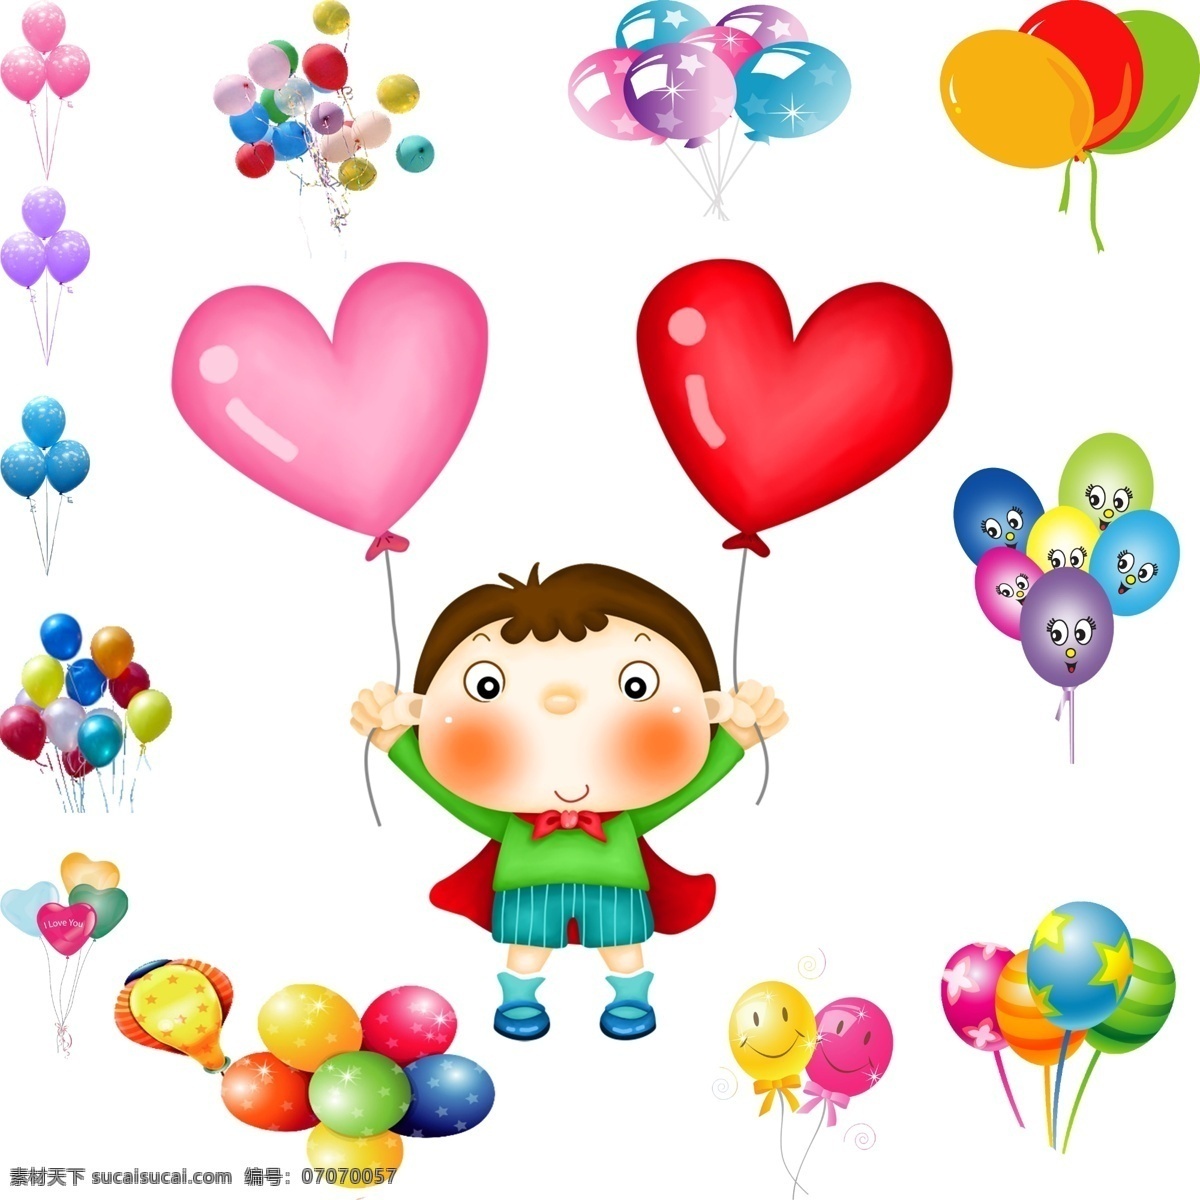 气球 模版下载 气球素材下载 气球模板下载 节日气球 儿童节气球 卡通气球 心形气球 笑脸气球 儿童节 节日素材 源文件